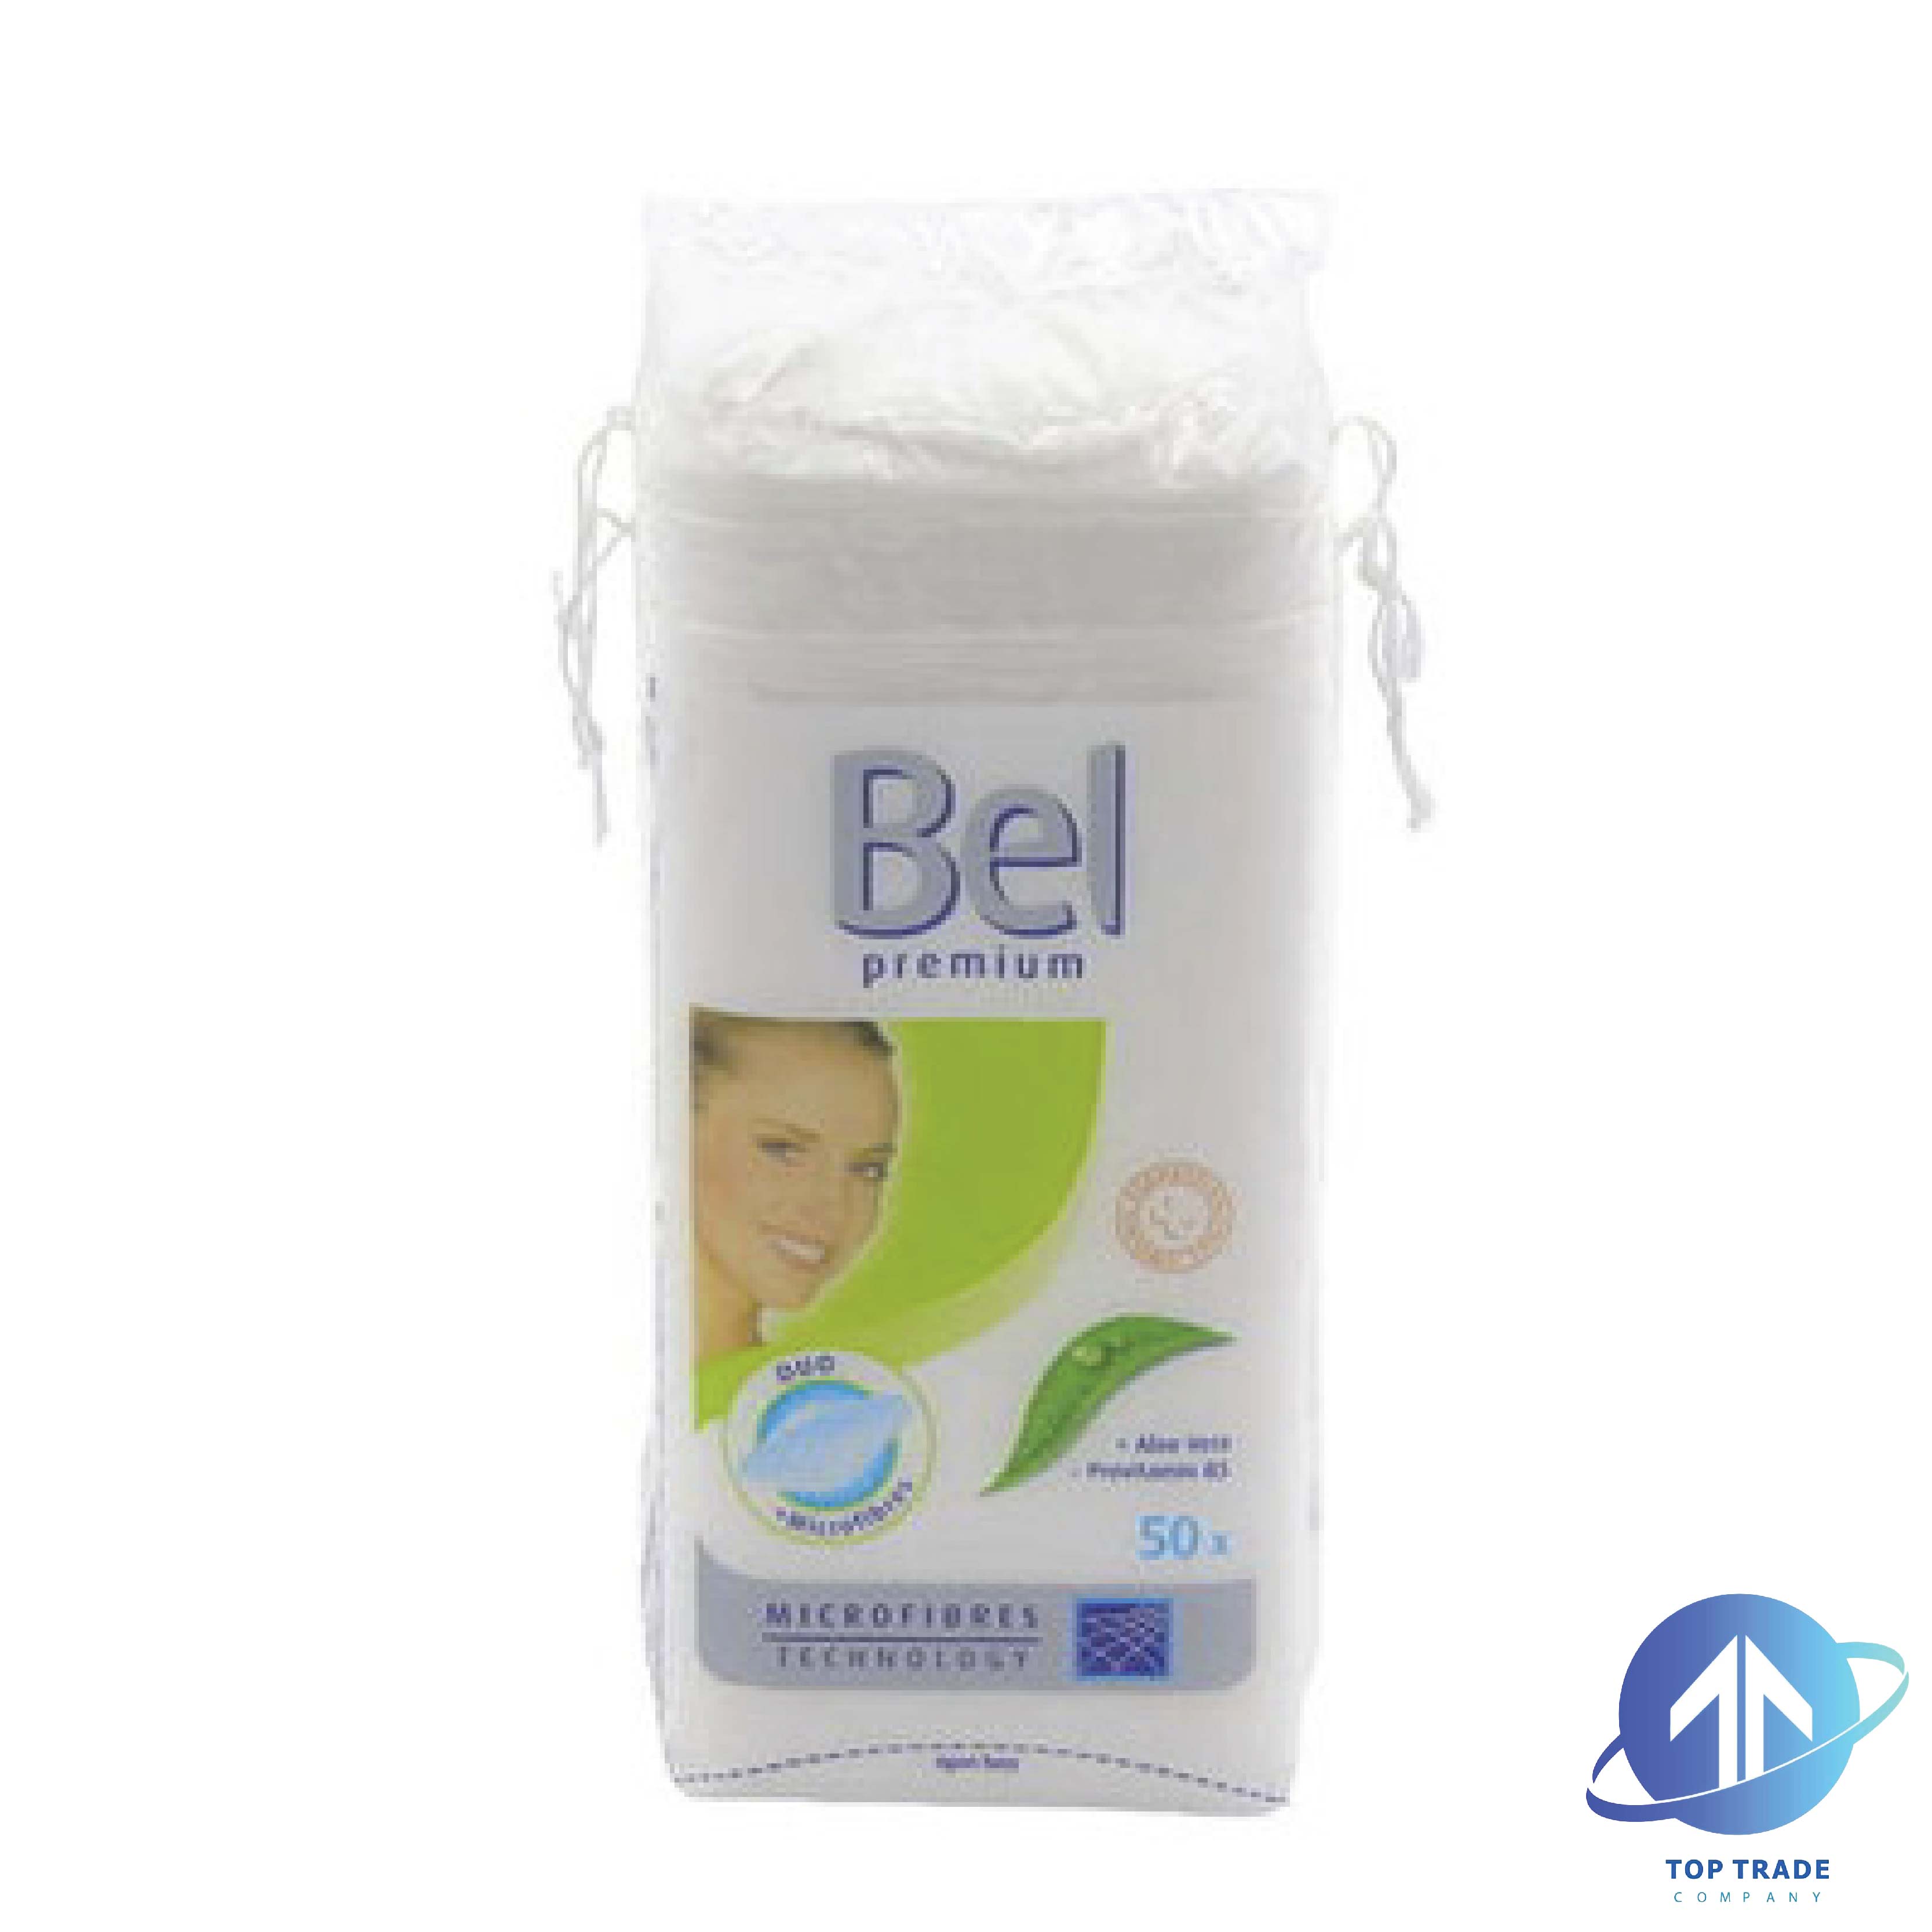 Bel Premium demaquillage pads square Aloe Vera 50pc